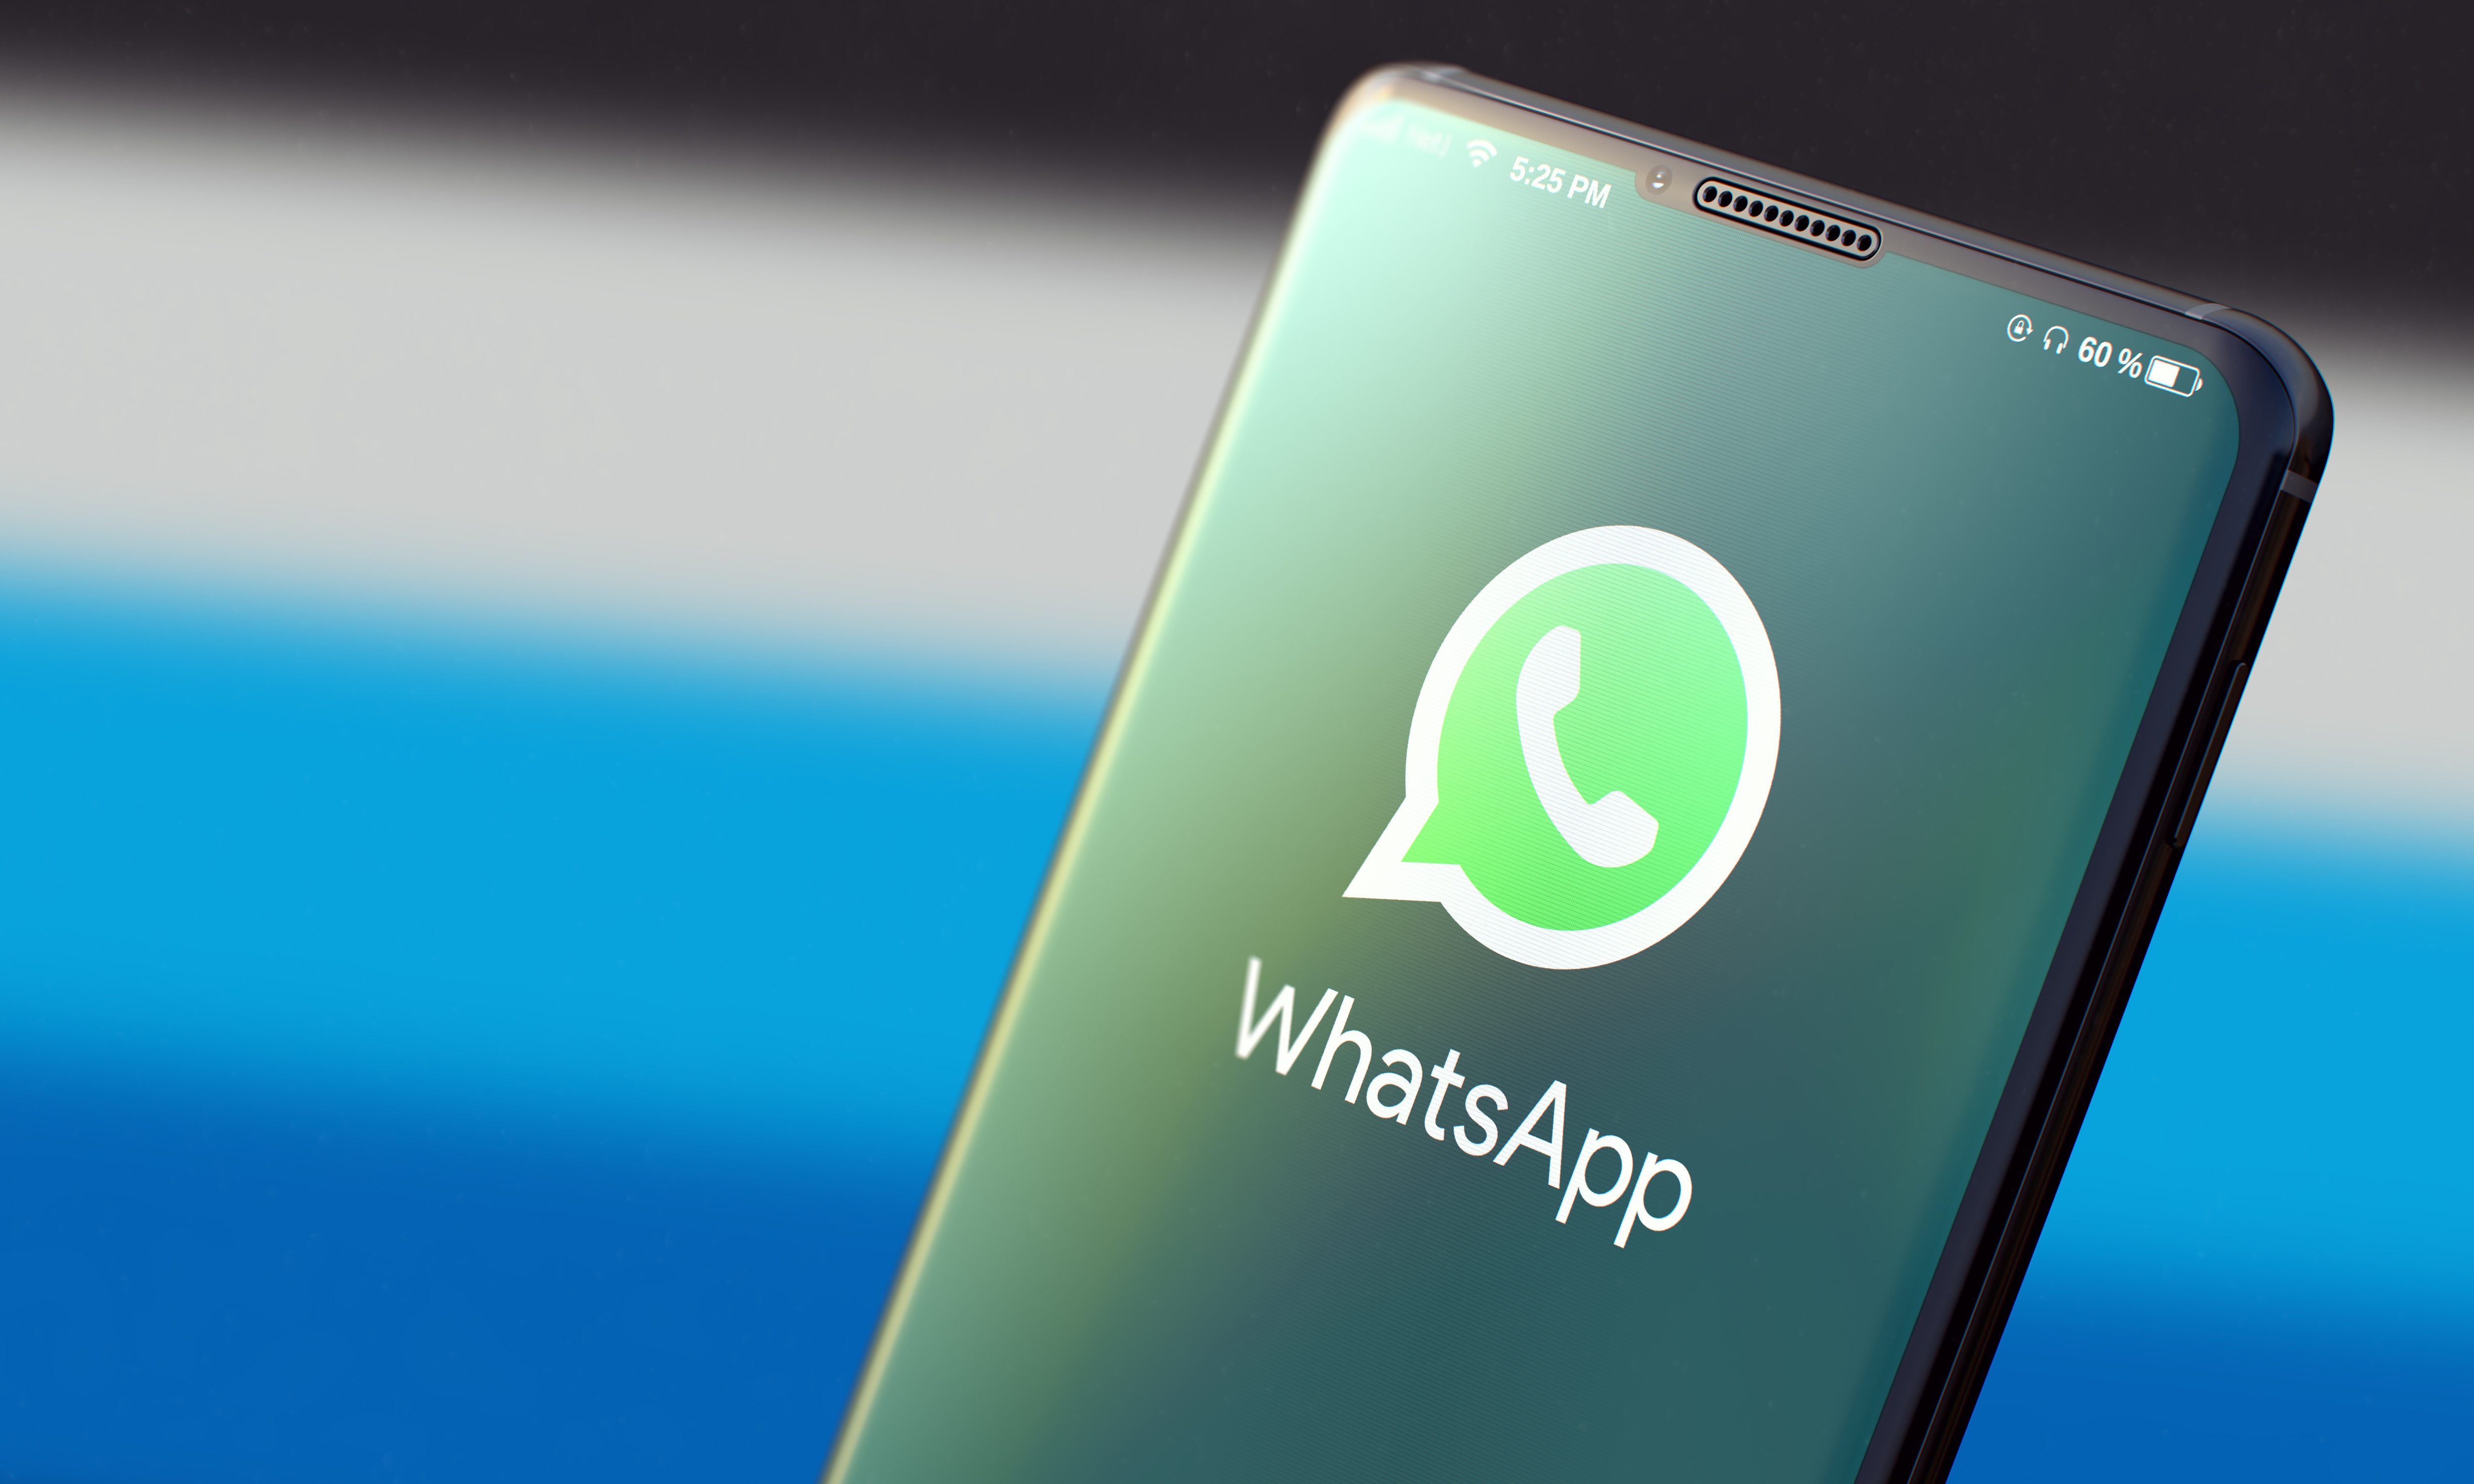 Whatsapp est une application de messagerie et de communication audio et vidéo disponible sur les smartphones, voire sur un ordinateur. © tashatuvango, Adobe Stock